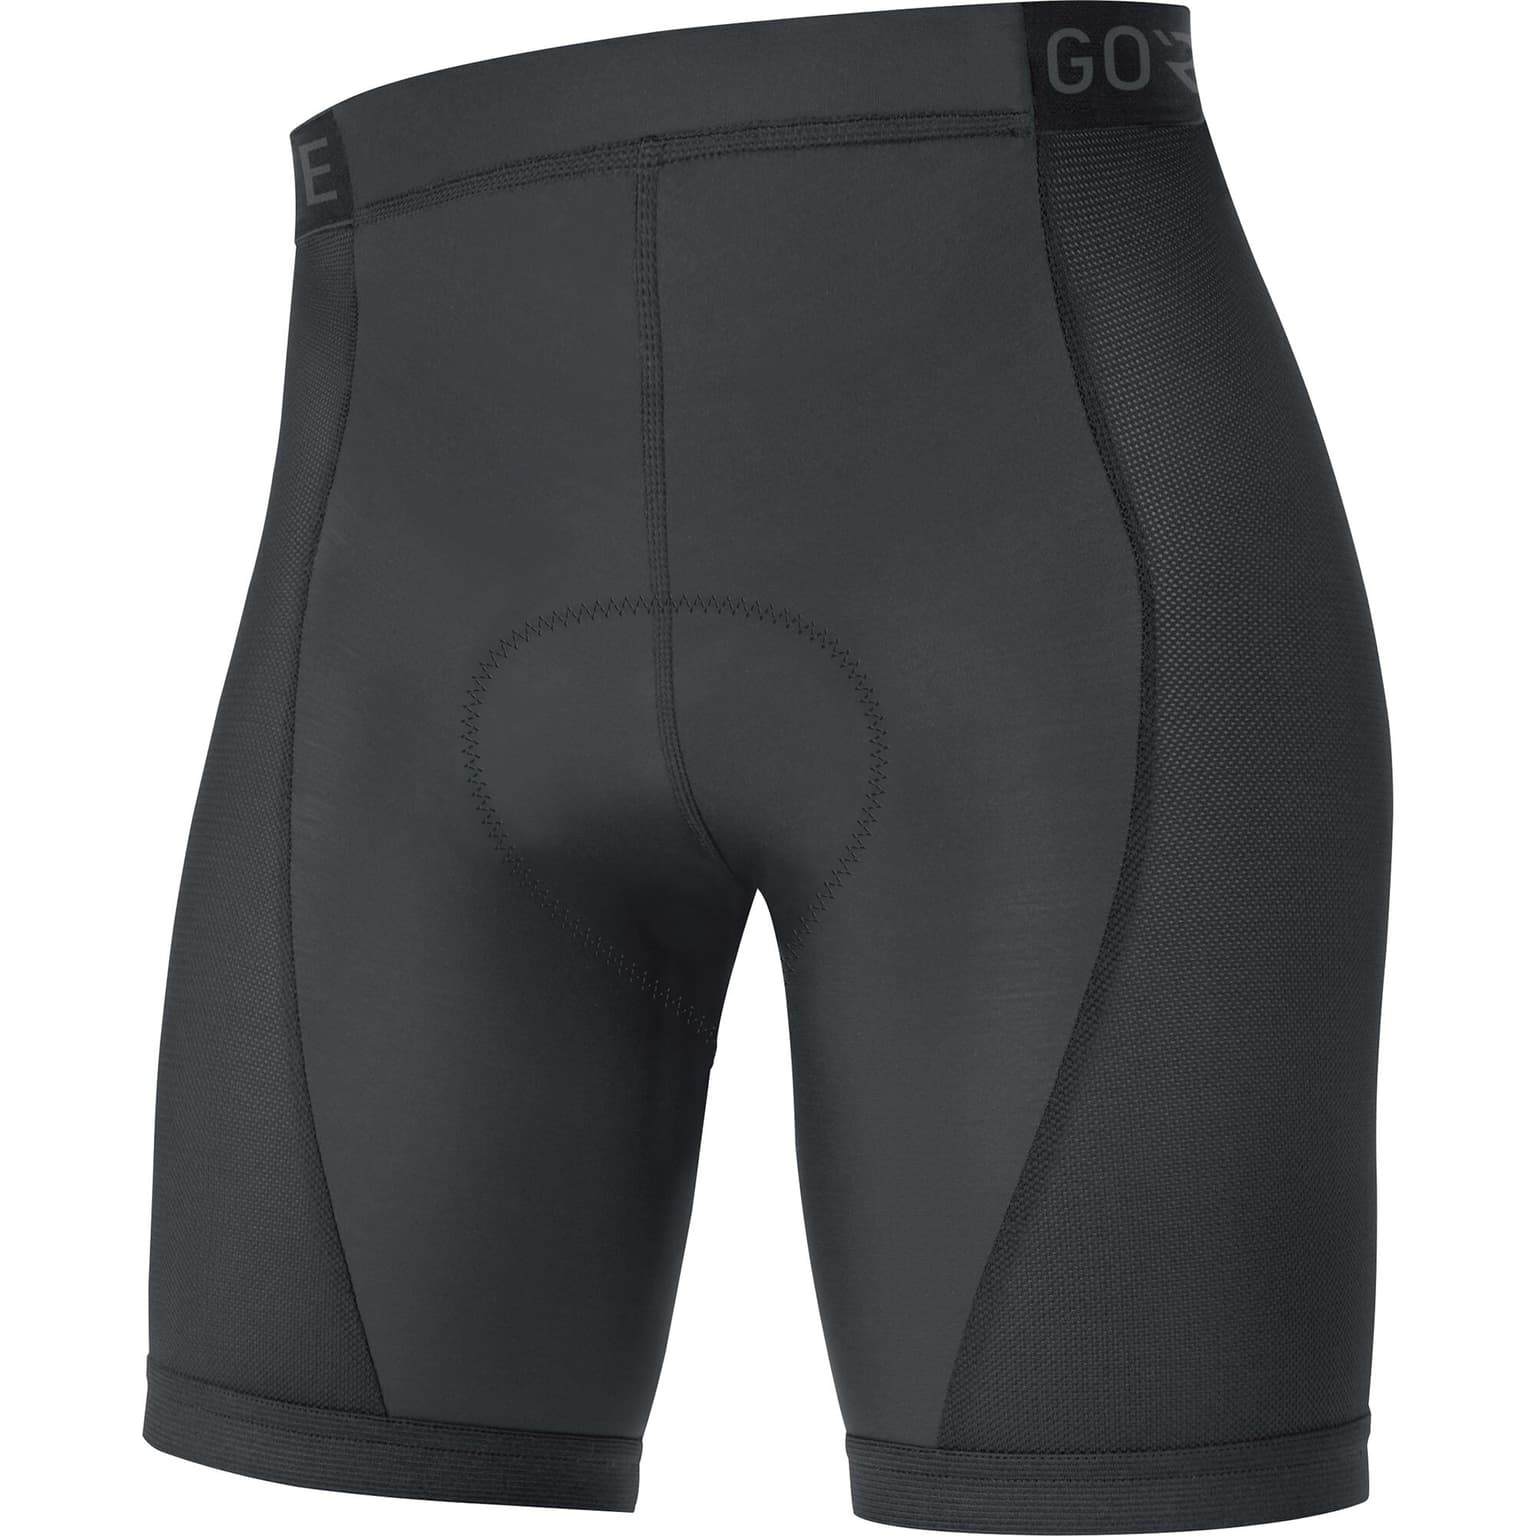 Gore Gore C3 Liner Short Tights+ Sous-vêtement de cyclisme noir 1